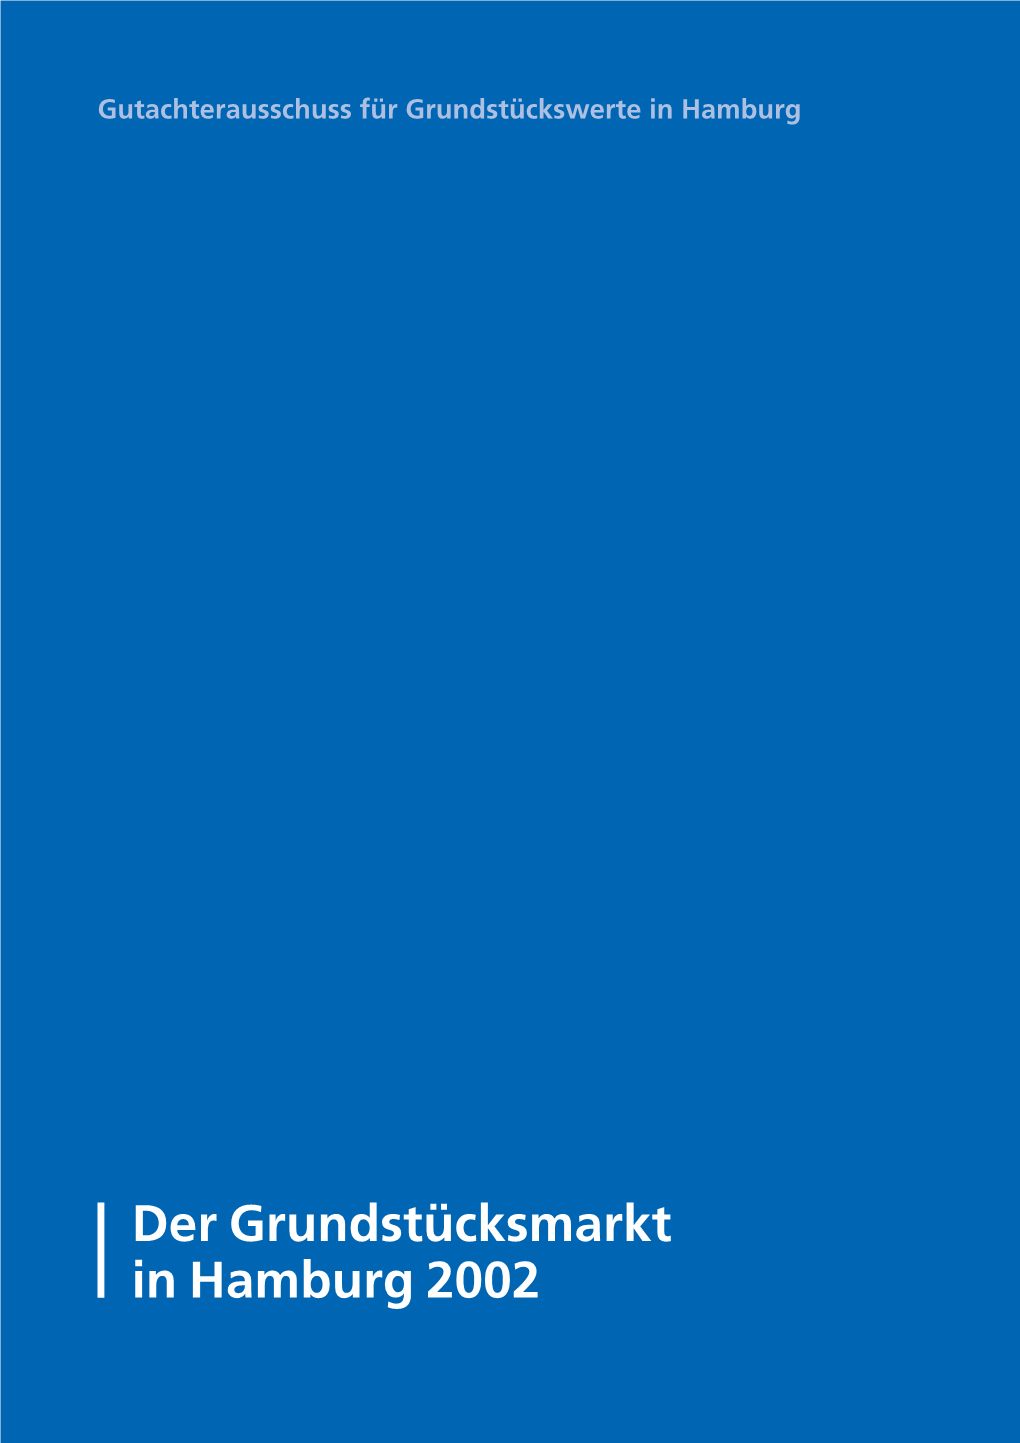 Der Grundstücksmarkt in Hamburg 2002 Inhaltsverzeichnis